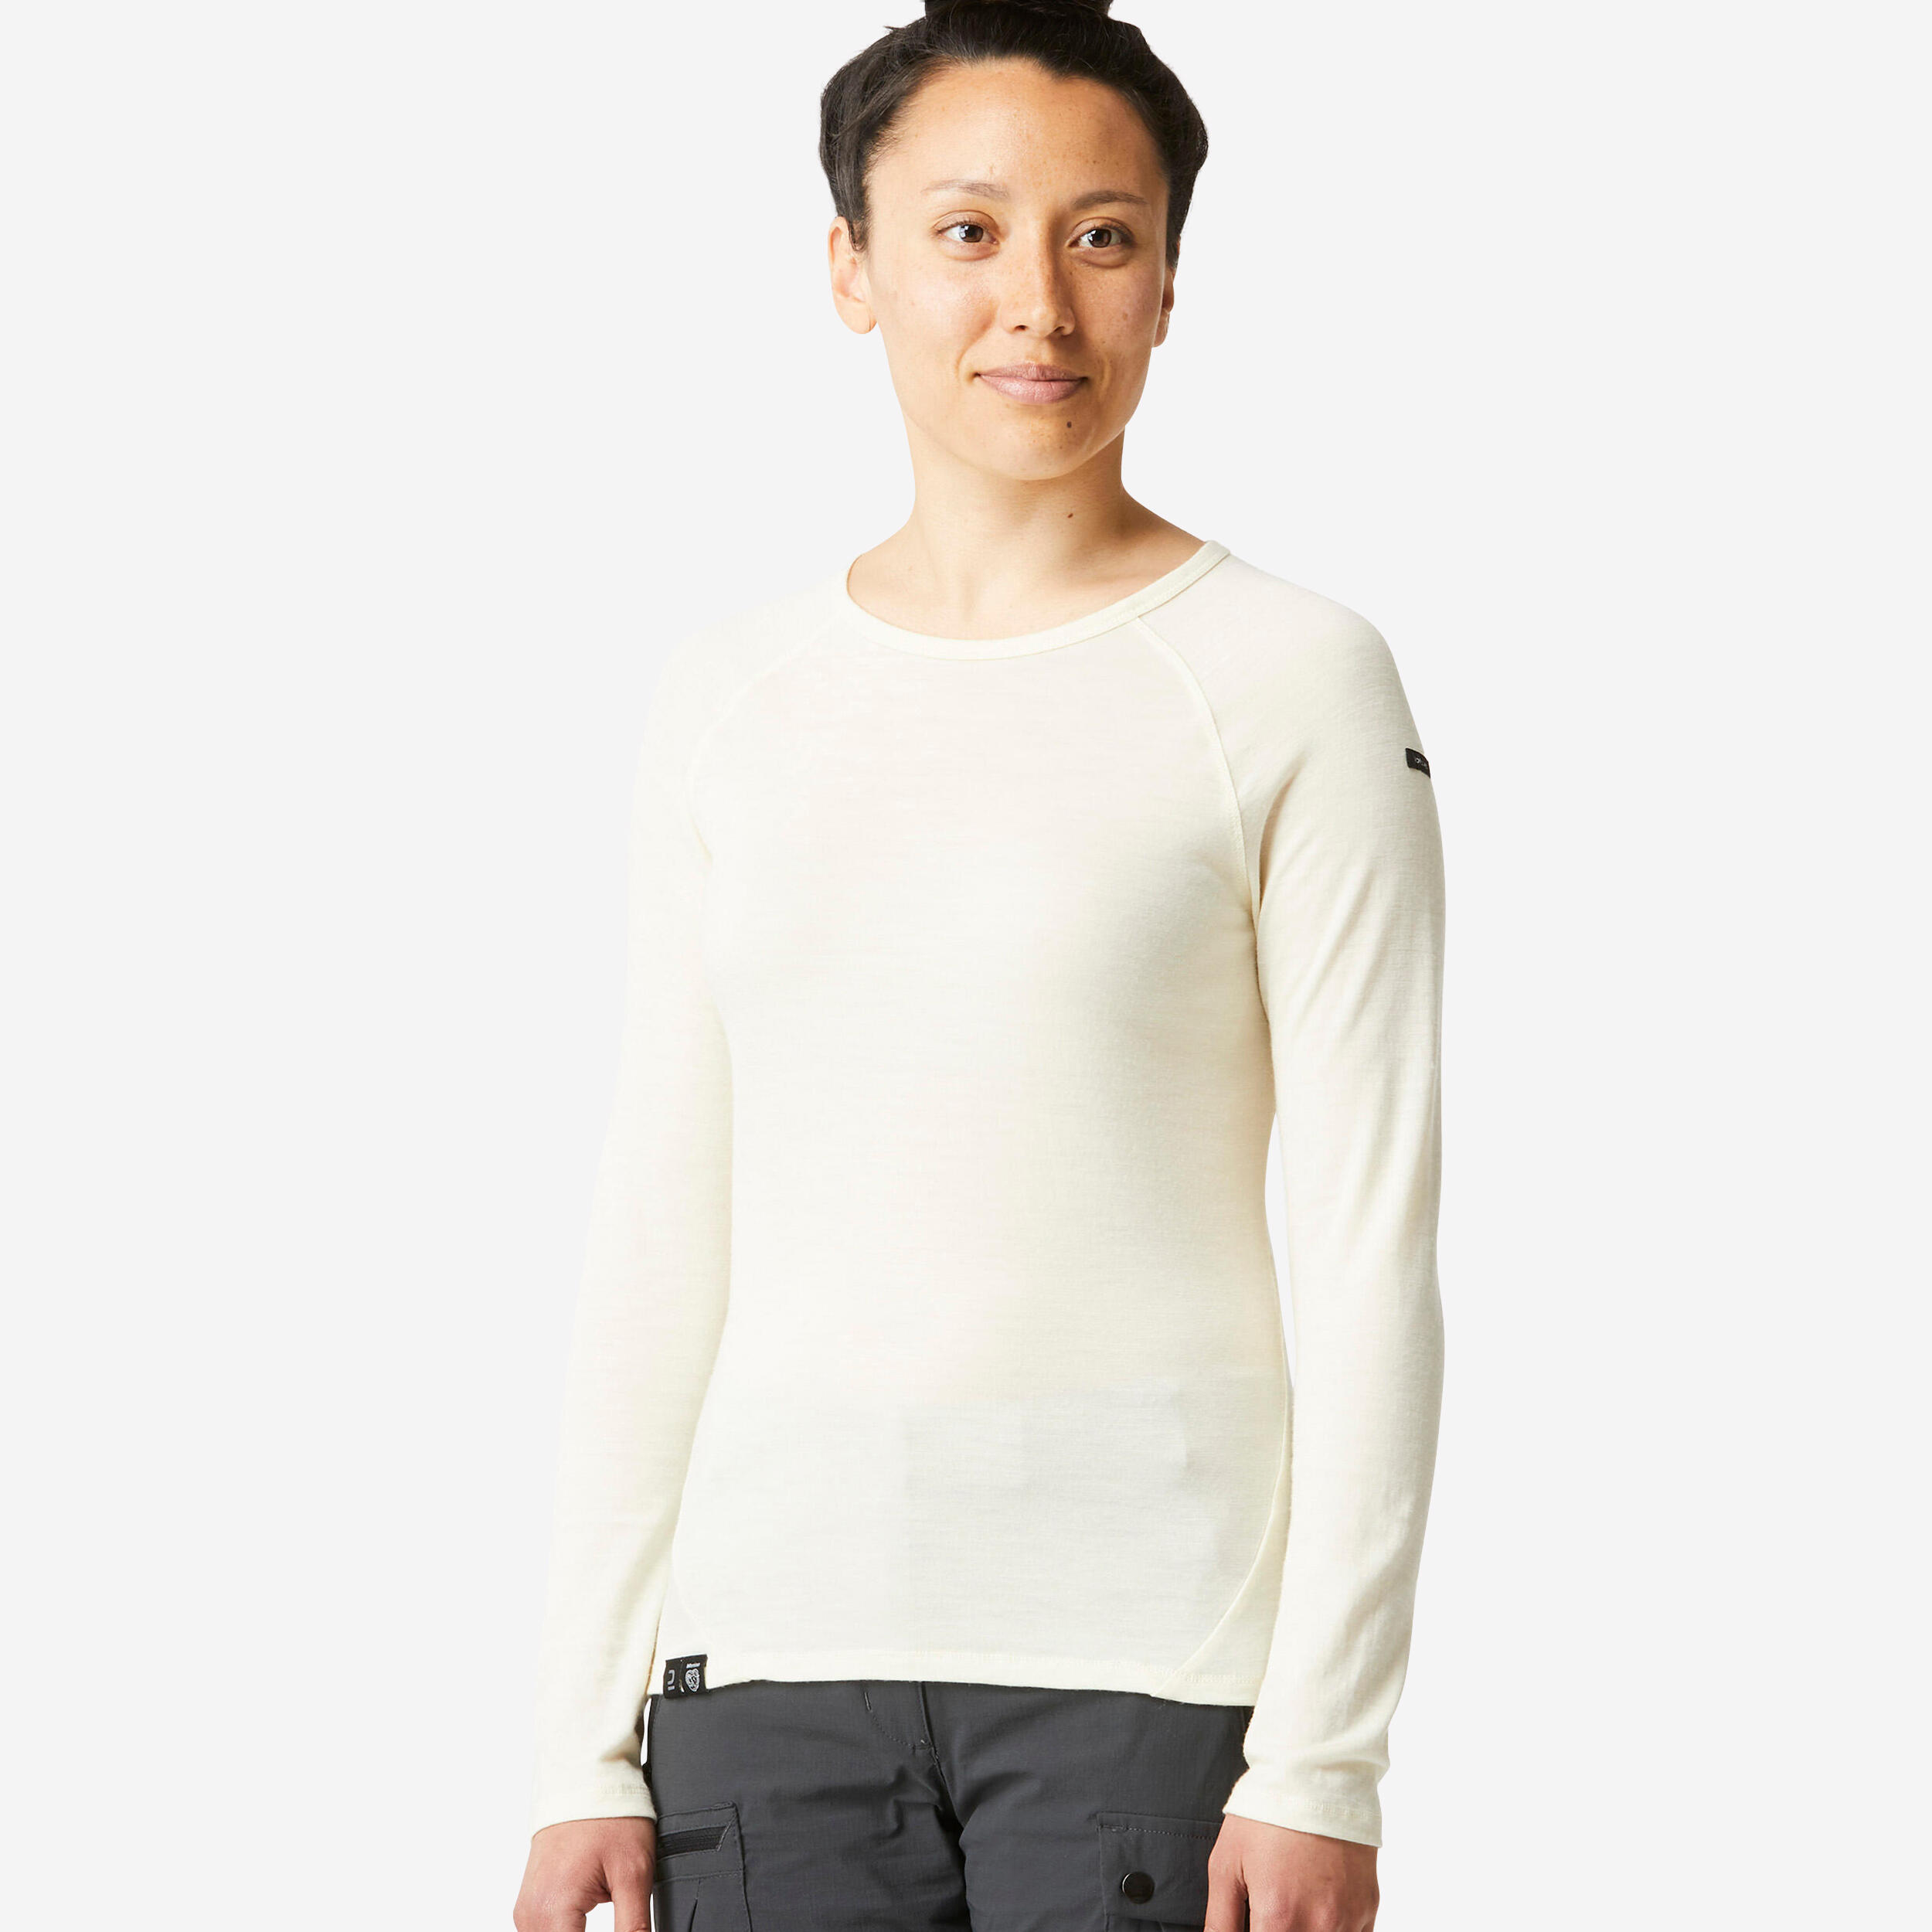 FORCLAZ Women’s Long-sleeve 100% Merino Wool T-shirt - MT500